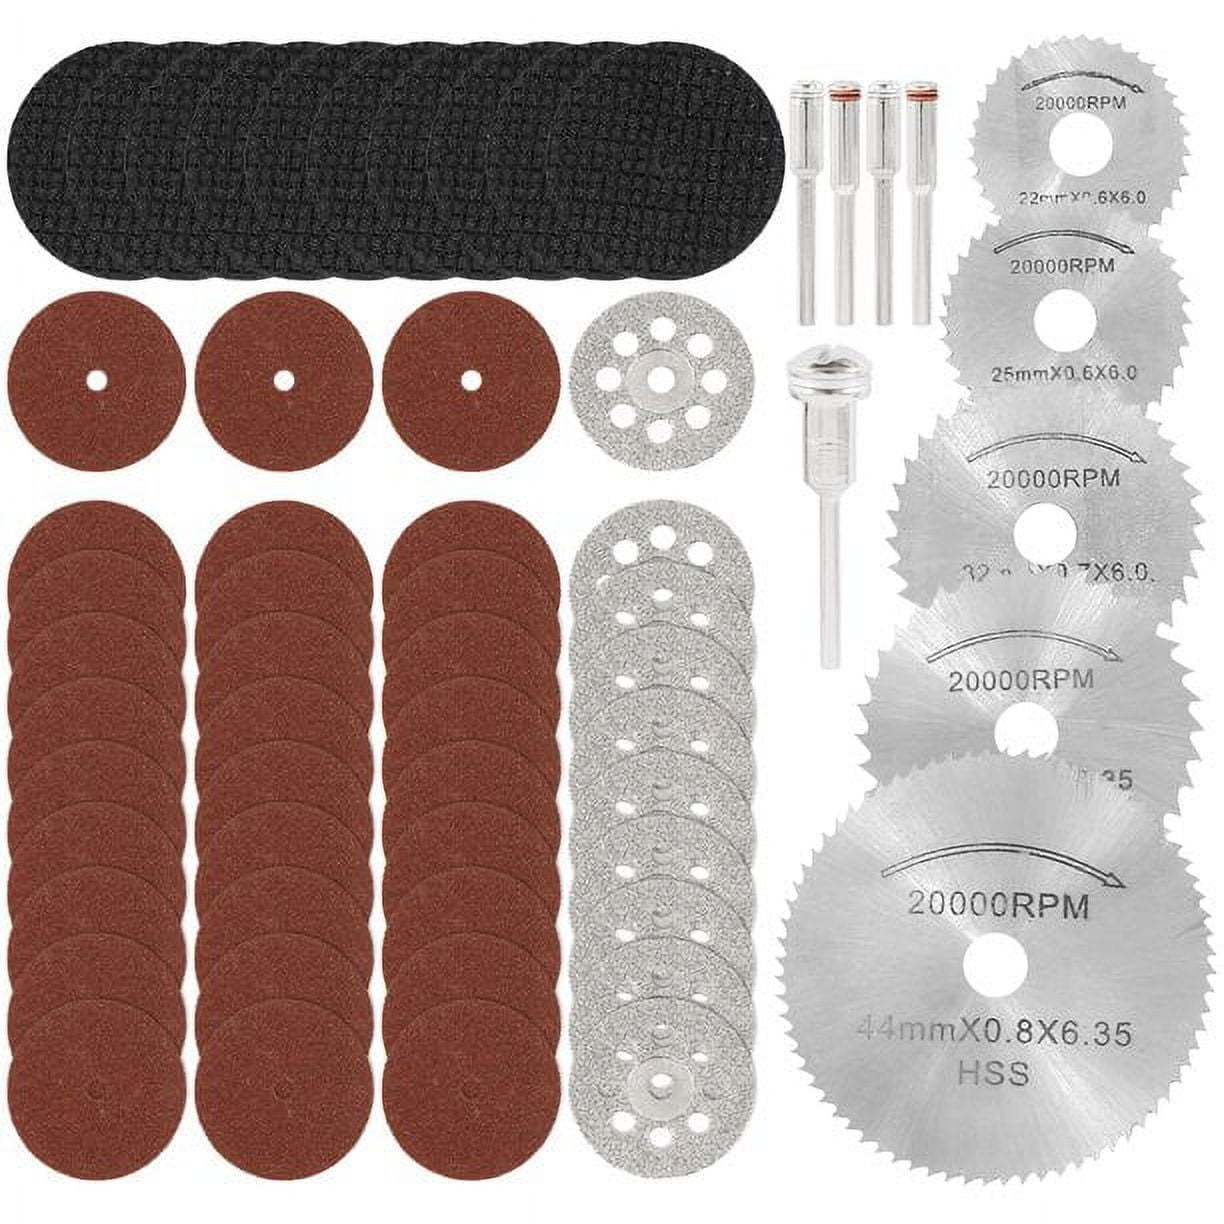 TSV 105pcs Mini Rotary Tool Kit Accessories Set, Multi-Purpose